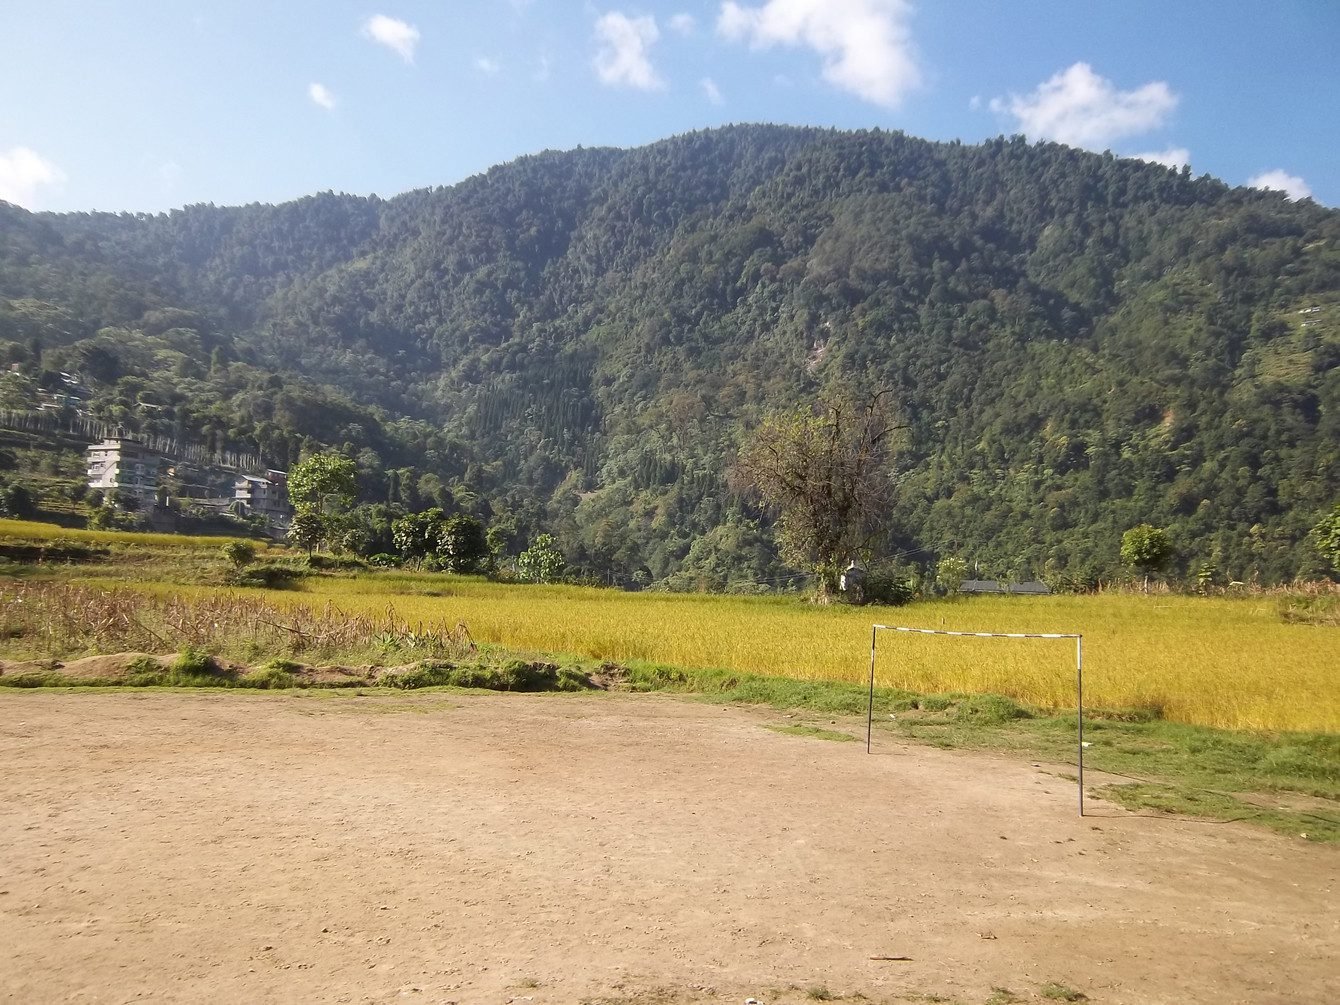 Darap Village, West Sikkim